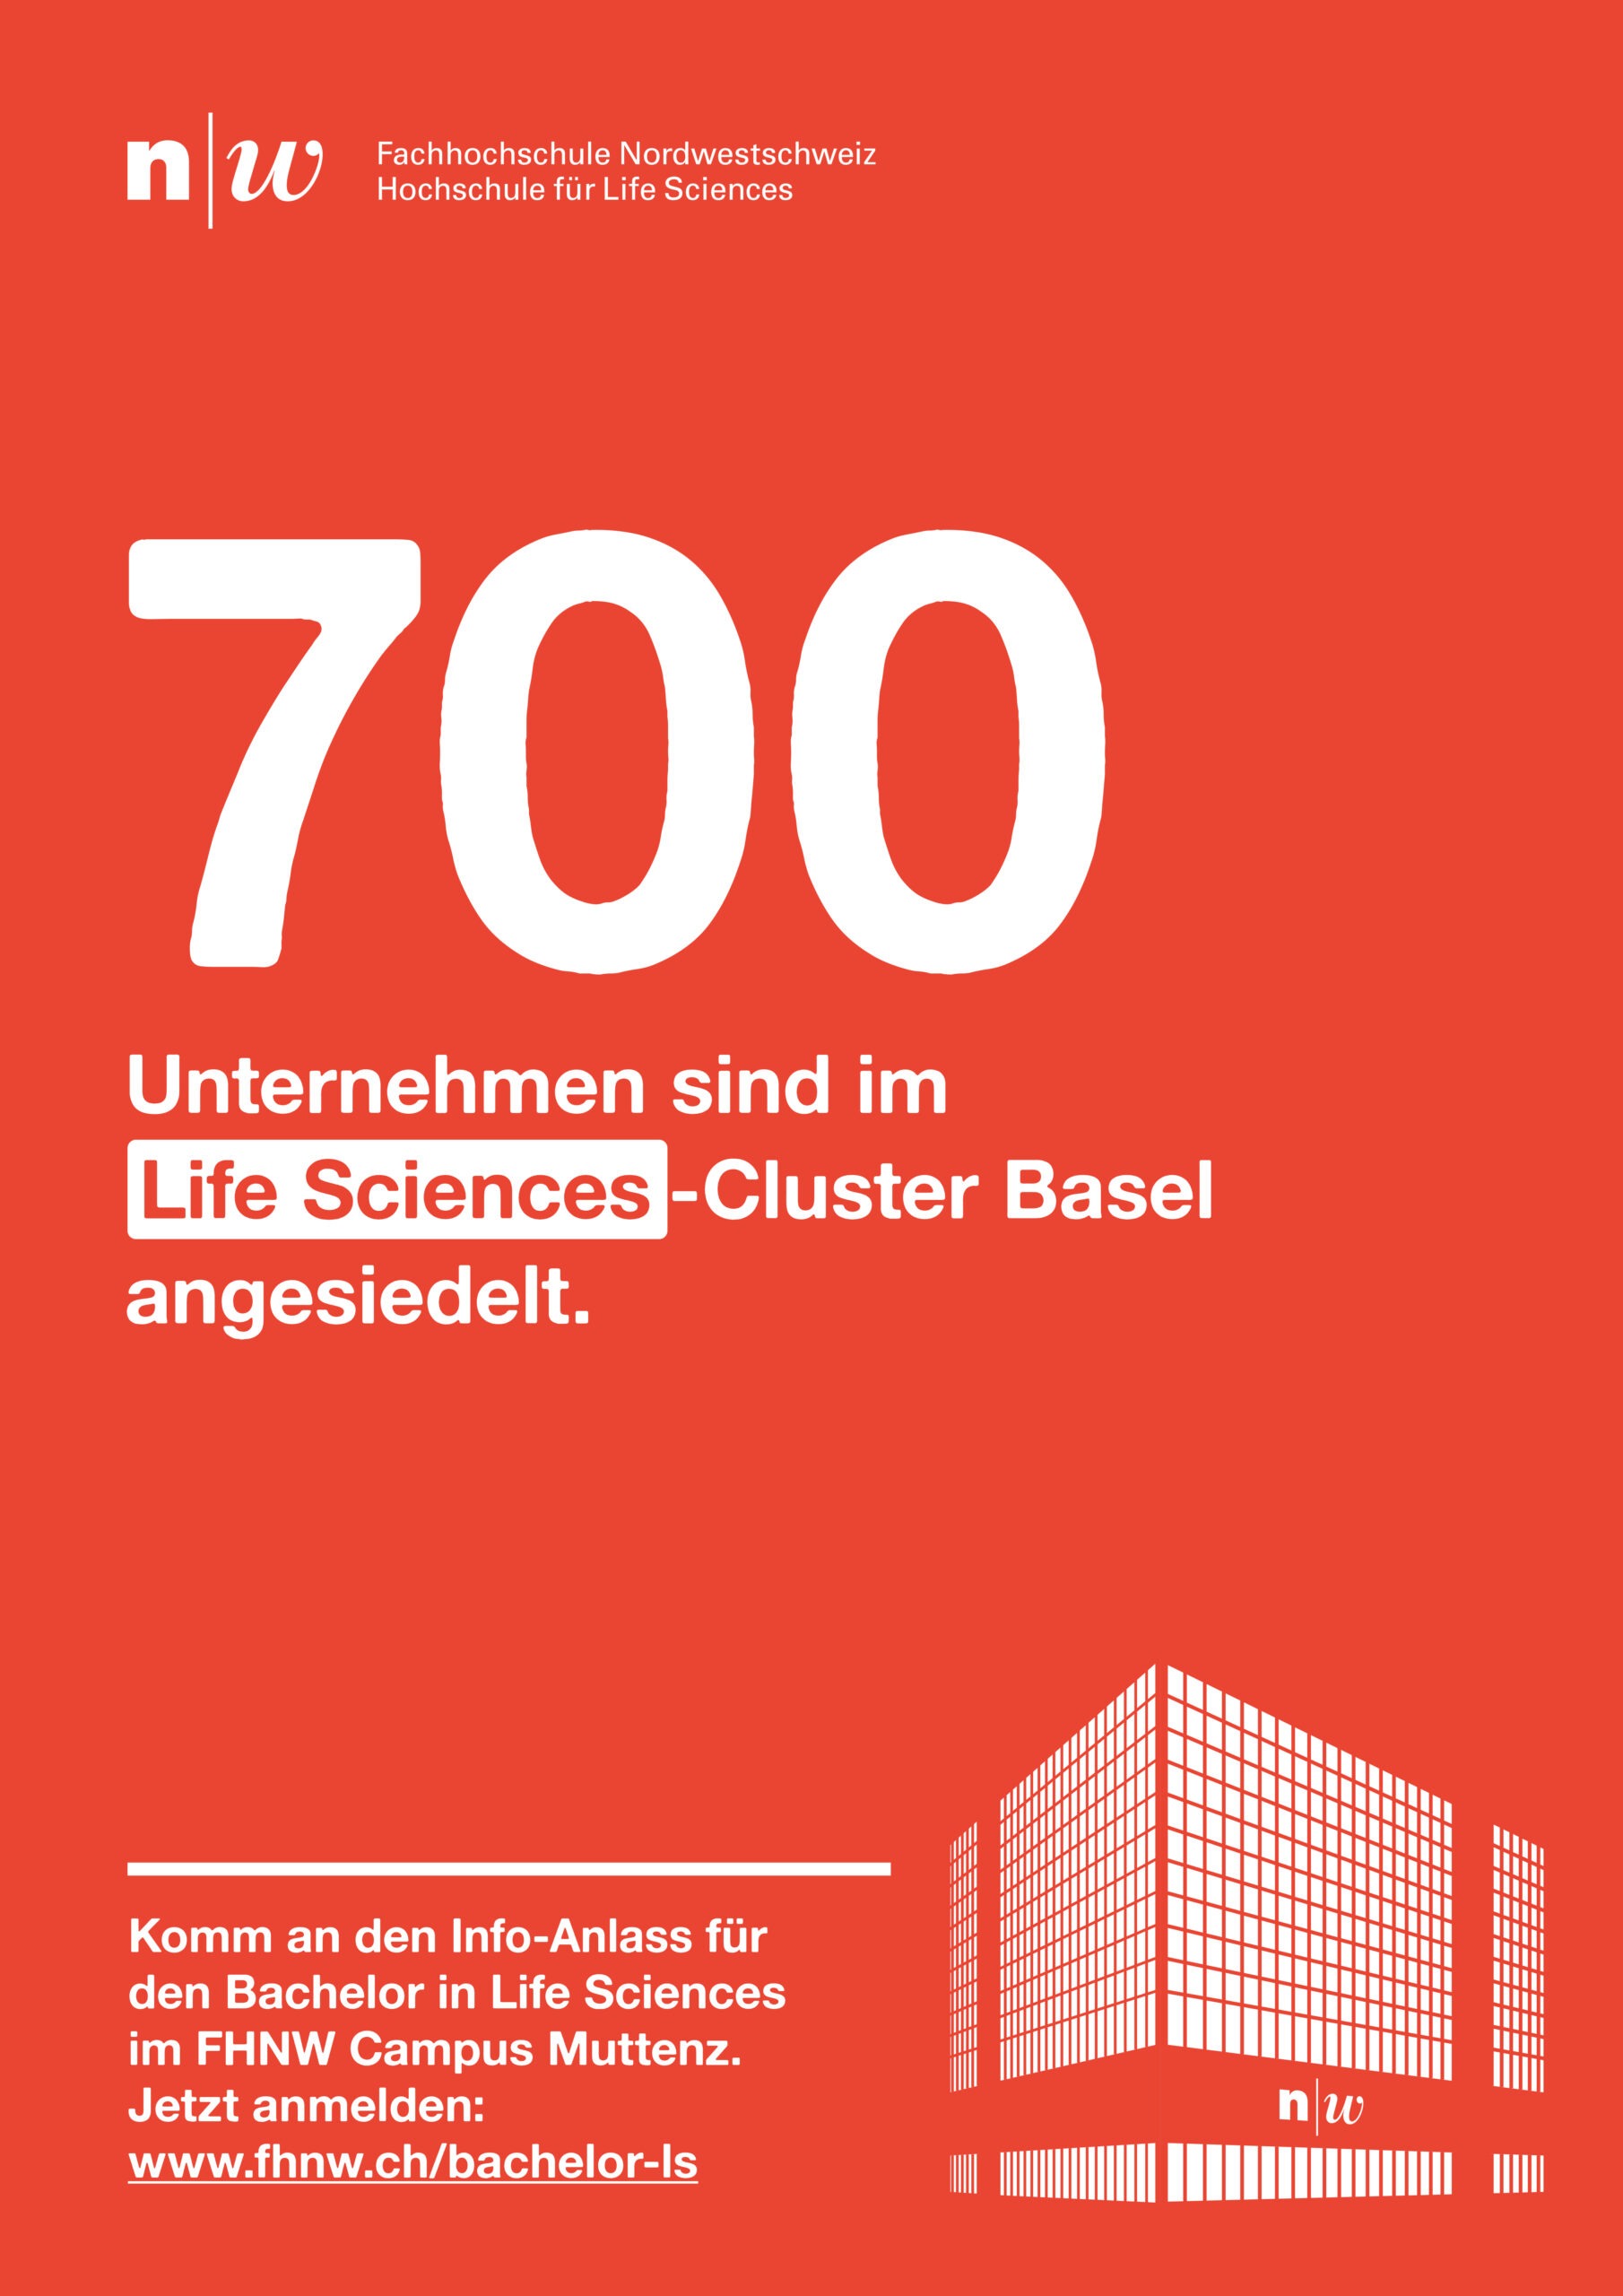 cr Werbeagentur AG Basel FHNW